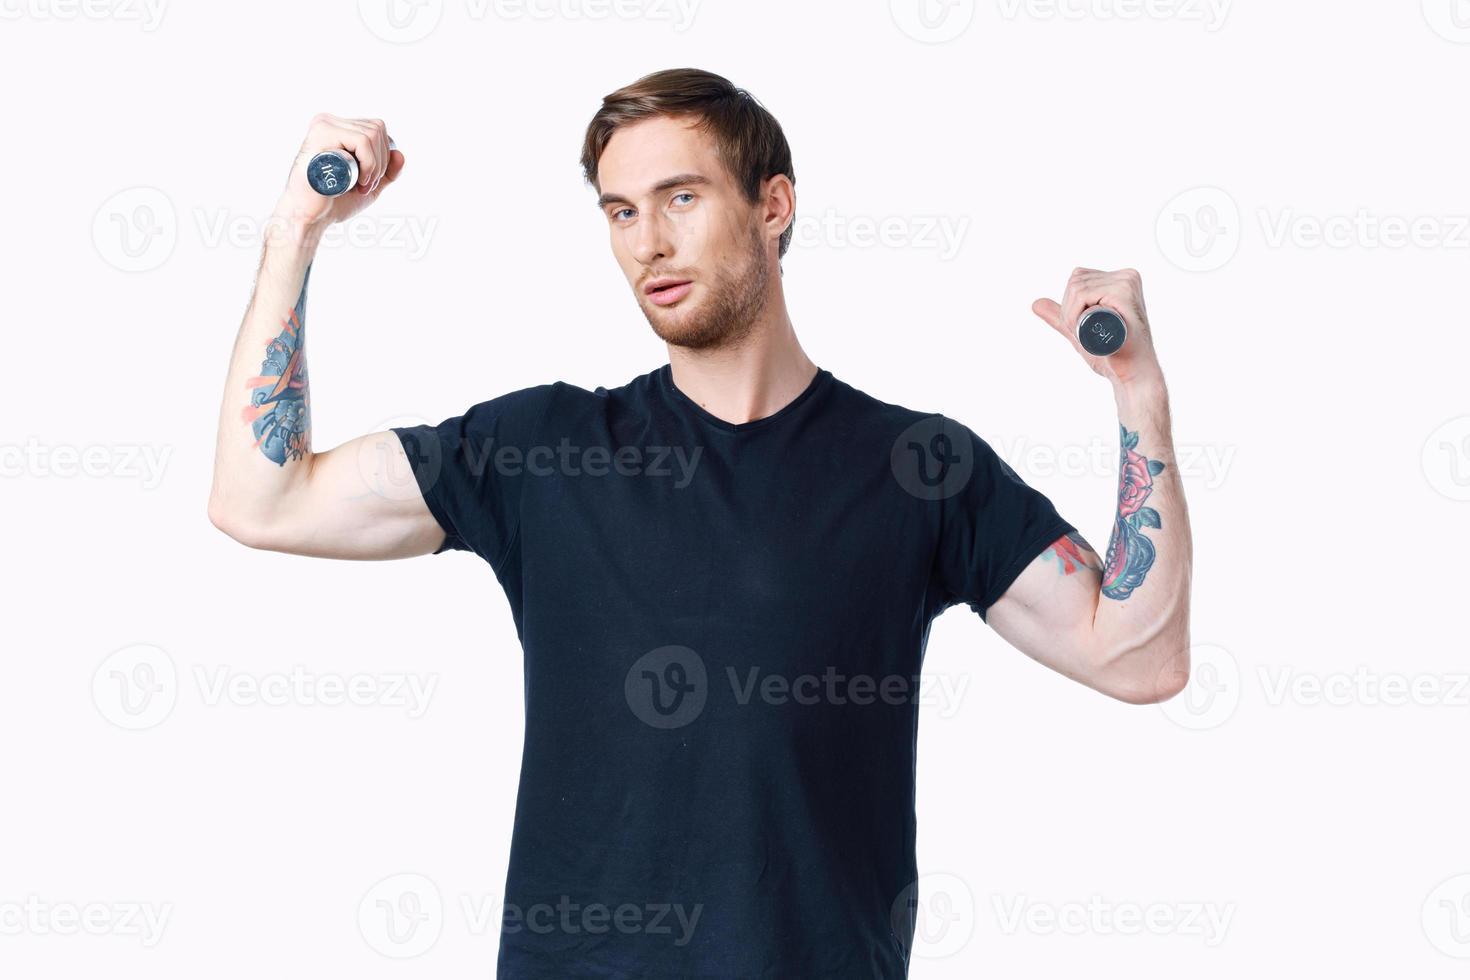 homem com halteres músculos músculos fisiculturista ginástica e tatuagem em dele braço foto